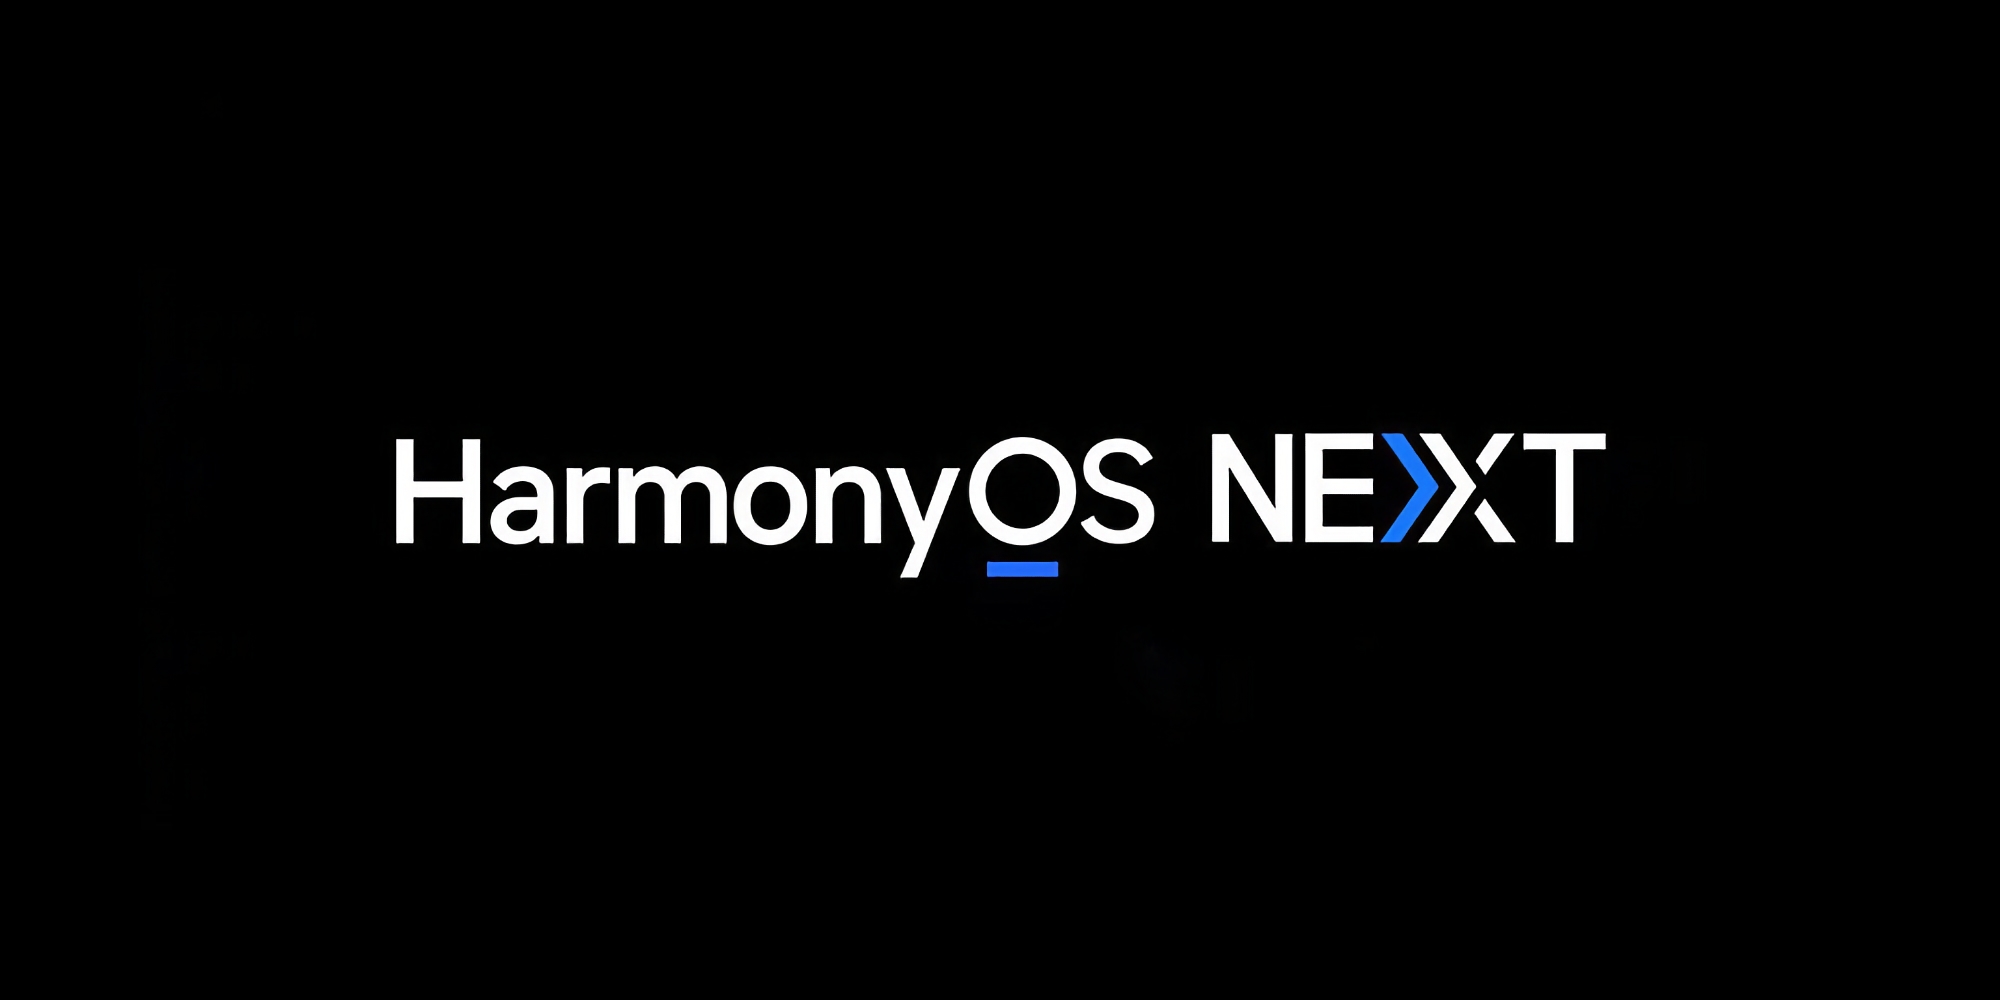 Huawei tar bort stöd för Android-appar i HarmonyOS Next